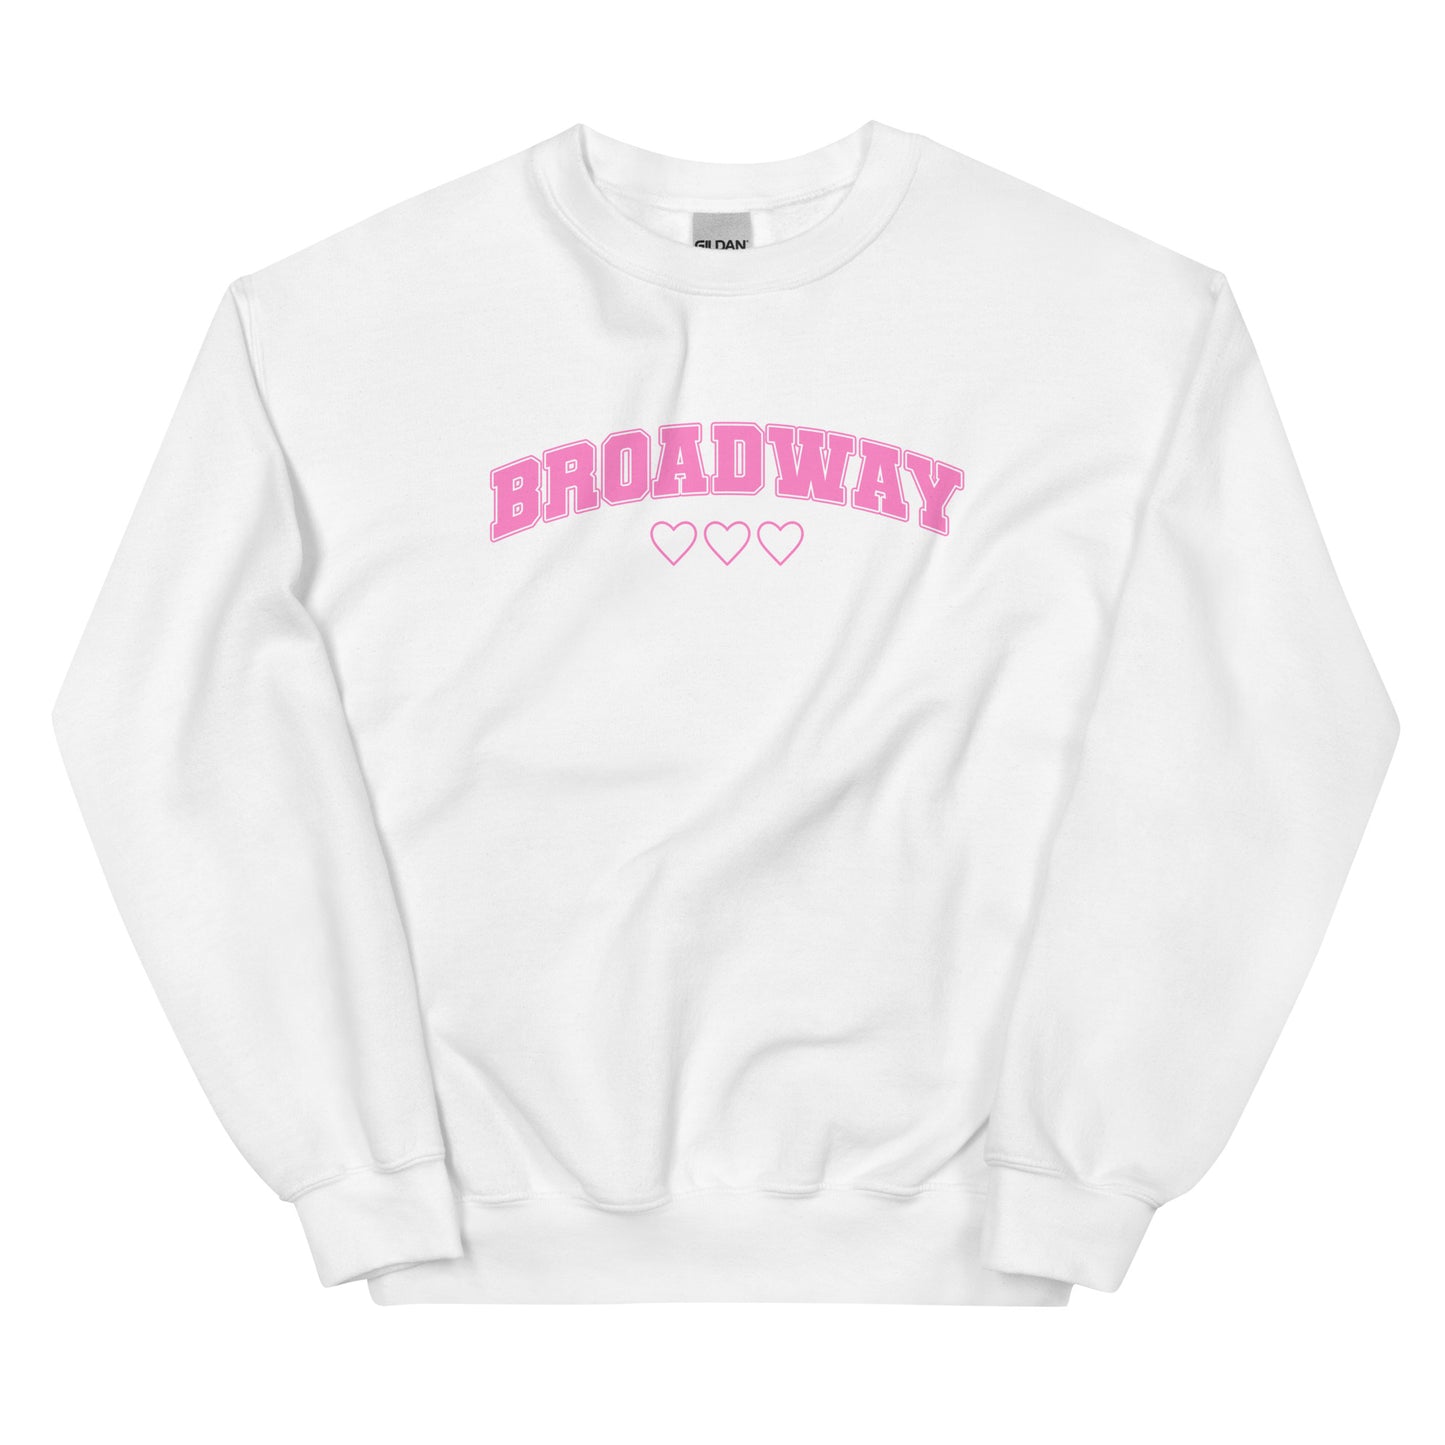 Broadway Collegiate Love Sweatshirt (Pink Graphic)